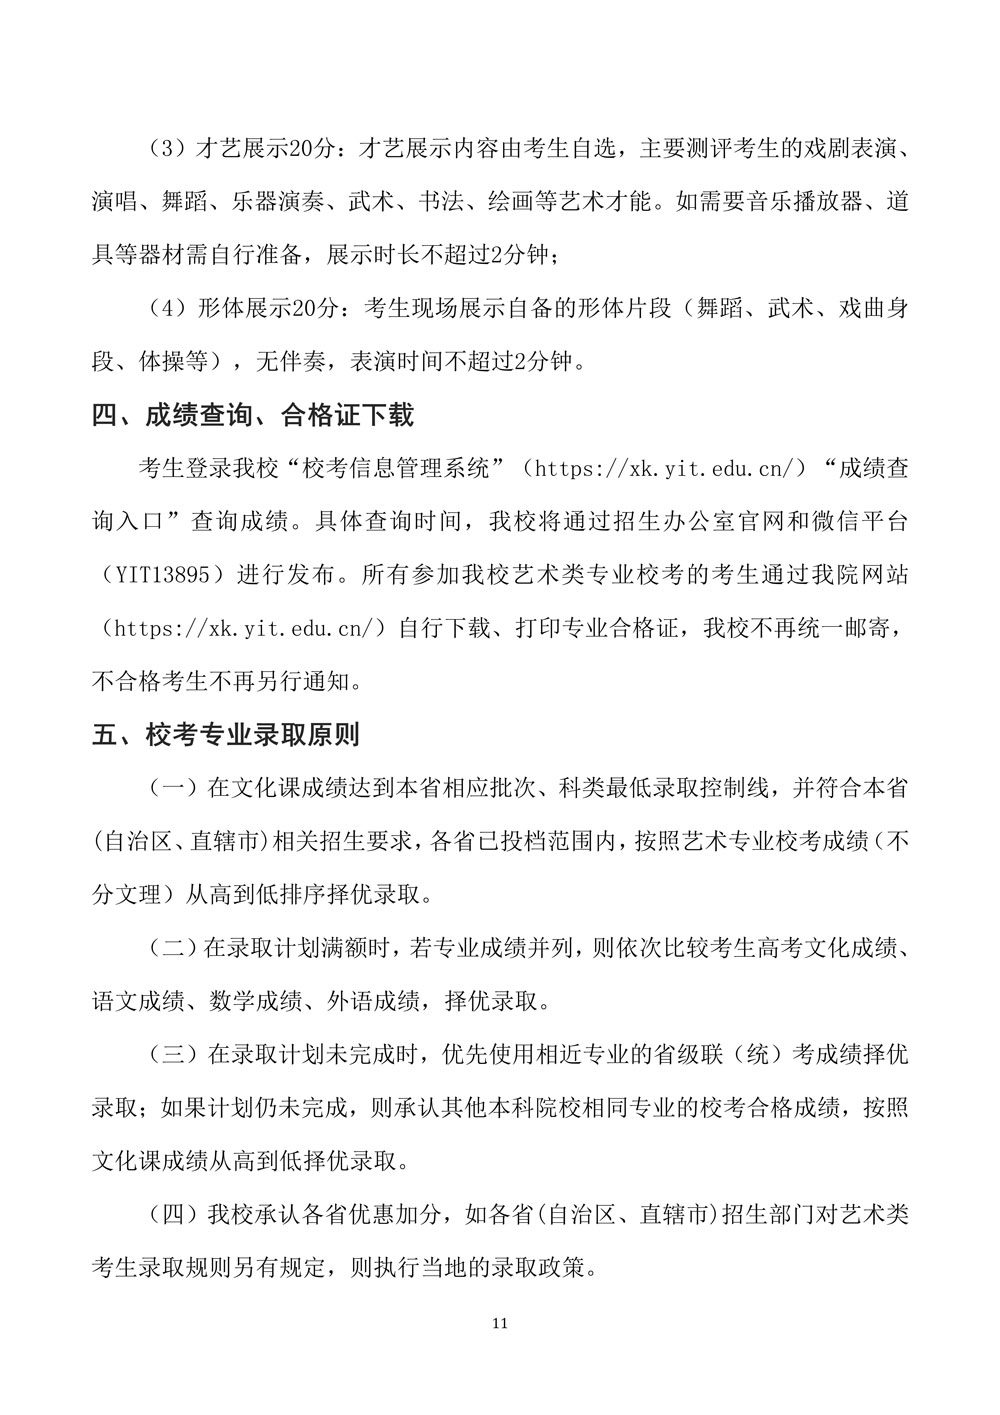 燕京理工学院关于调整2020年艺术类专业校考的公告11.jpg